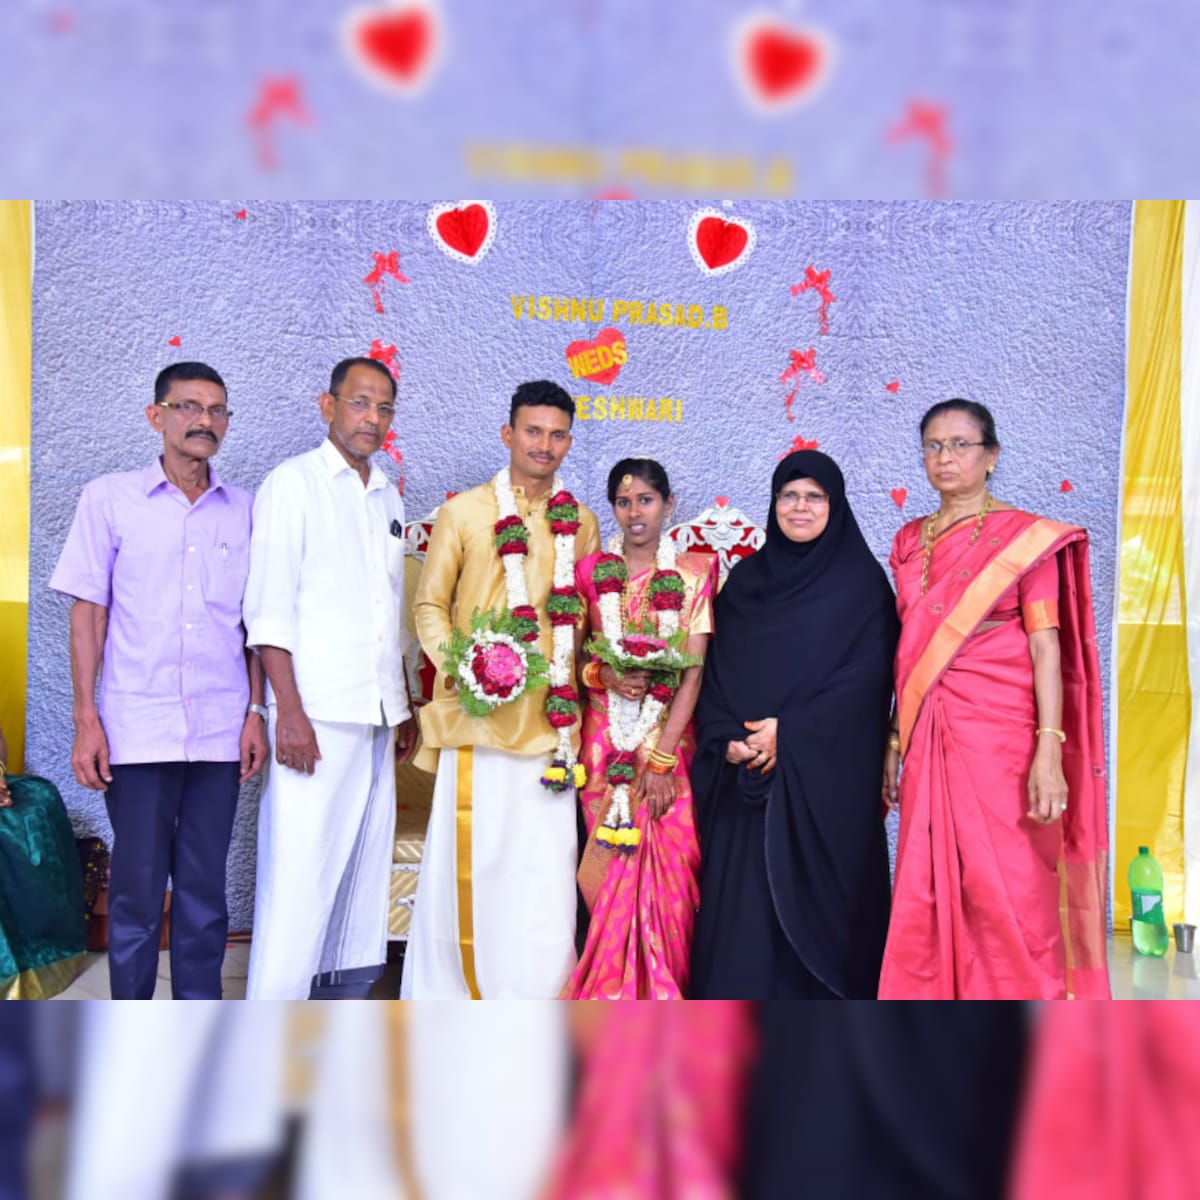 Keralas Abdulla and Khadeeja marry daughter Rajeshwari in temple